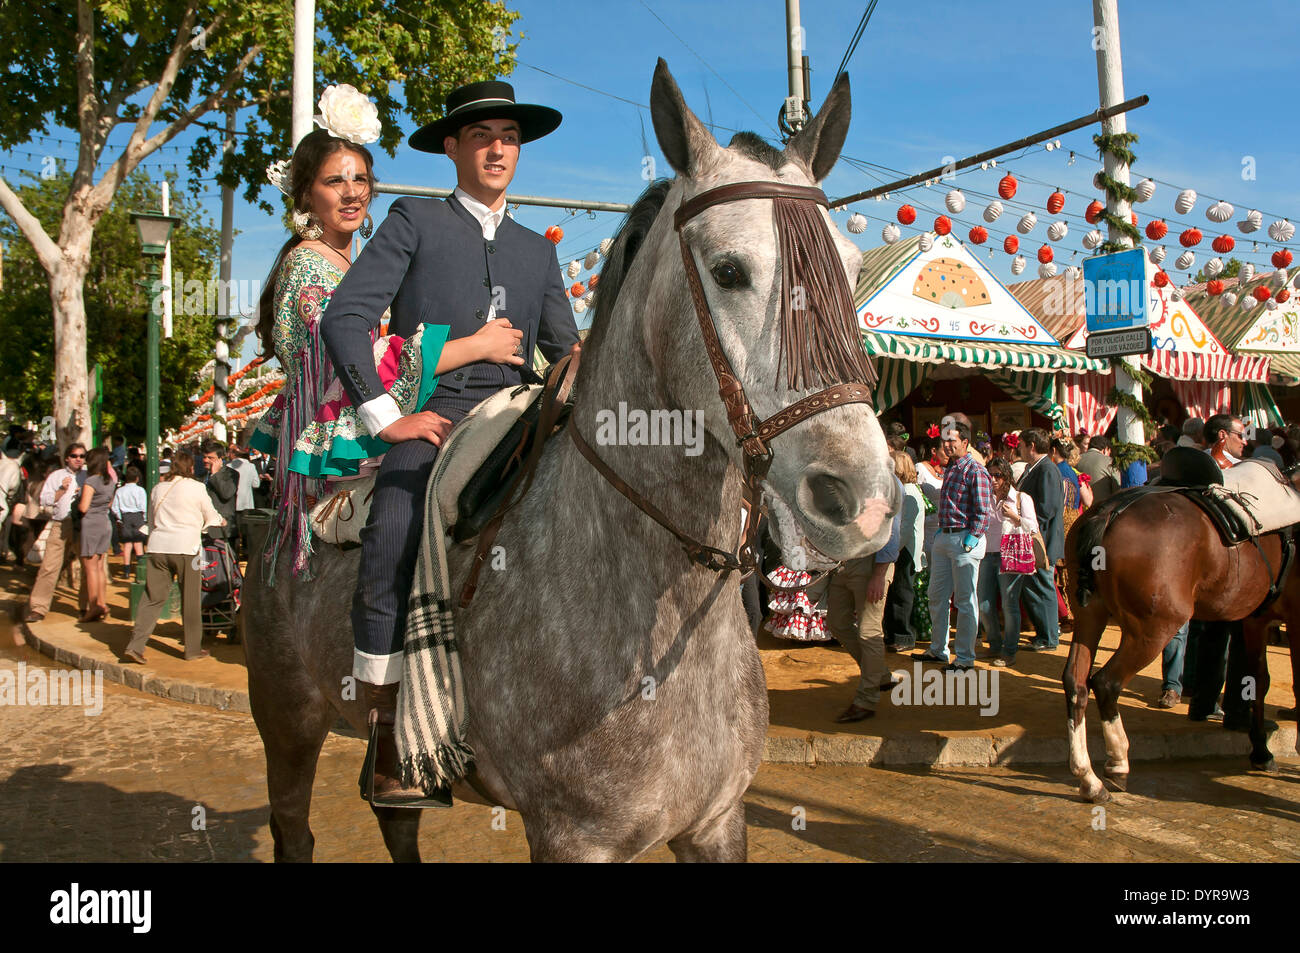 Feria de Abril, pareja joven montando a caballo, en Sevilla, en la región de Andalucía, España, Europa Foto de stock